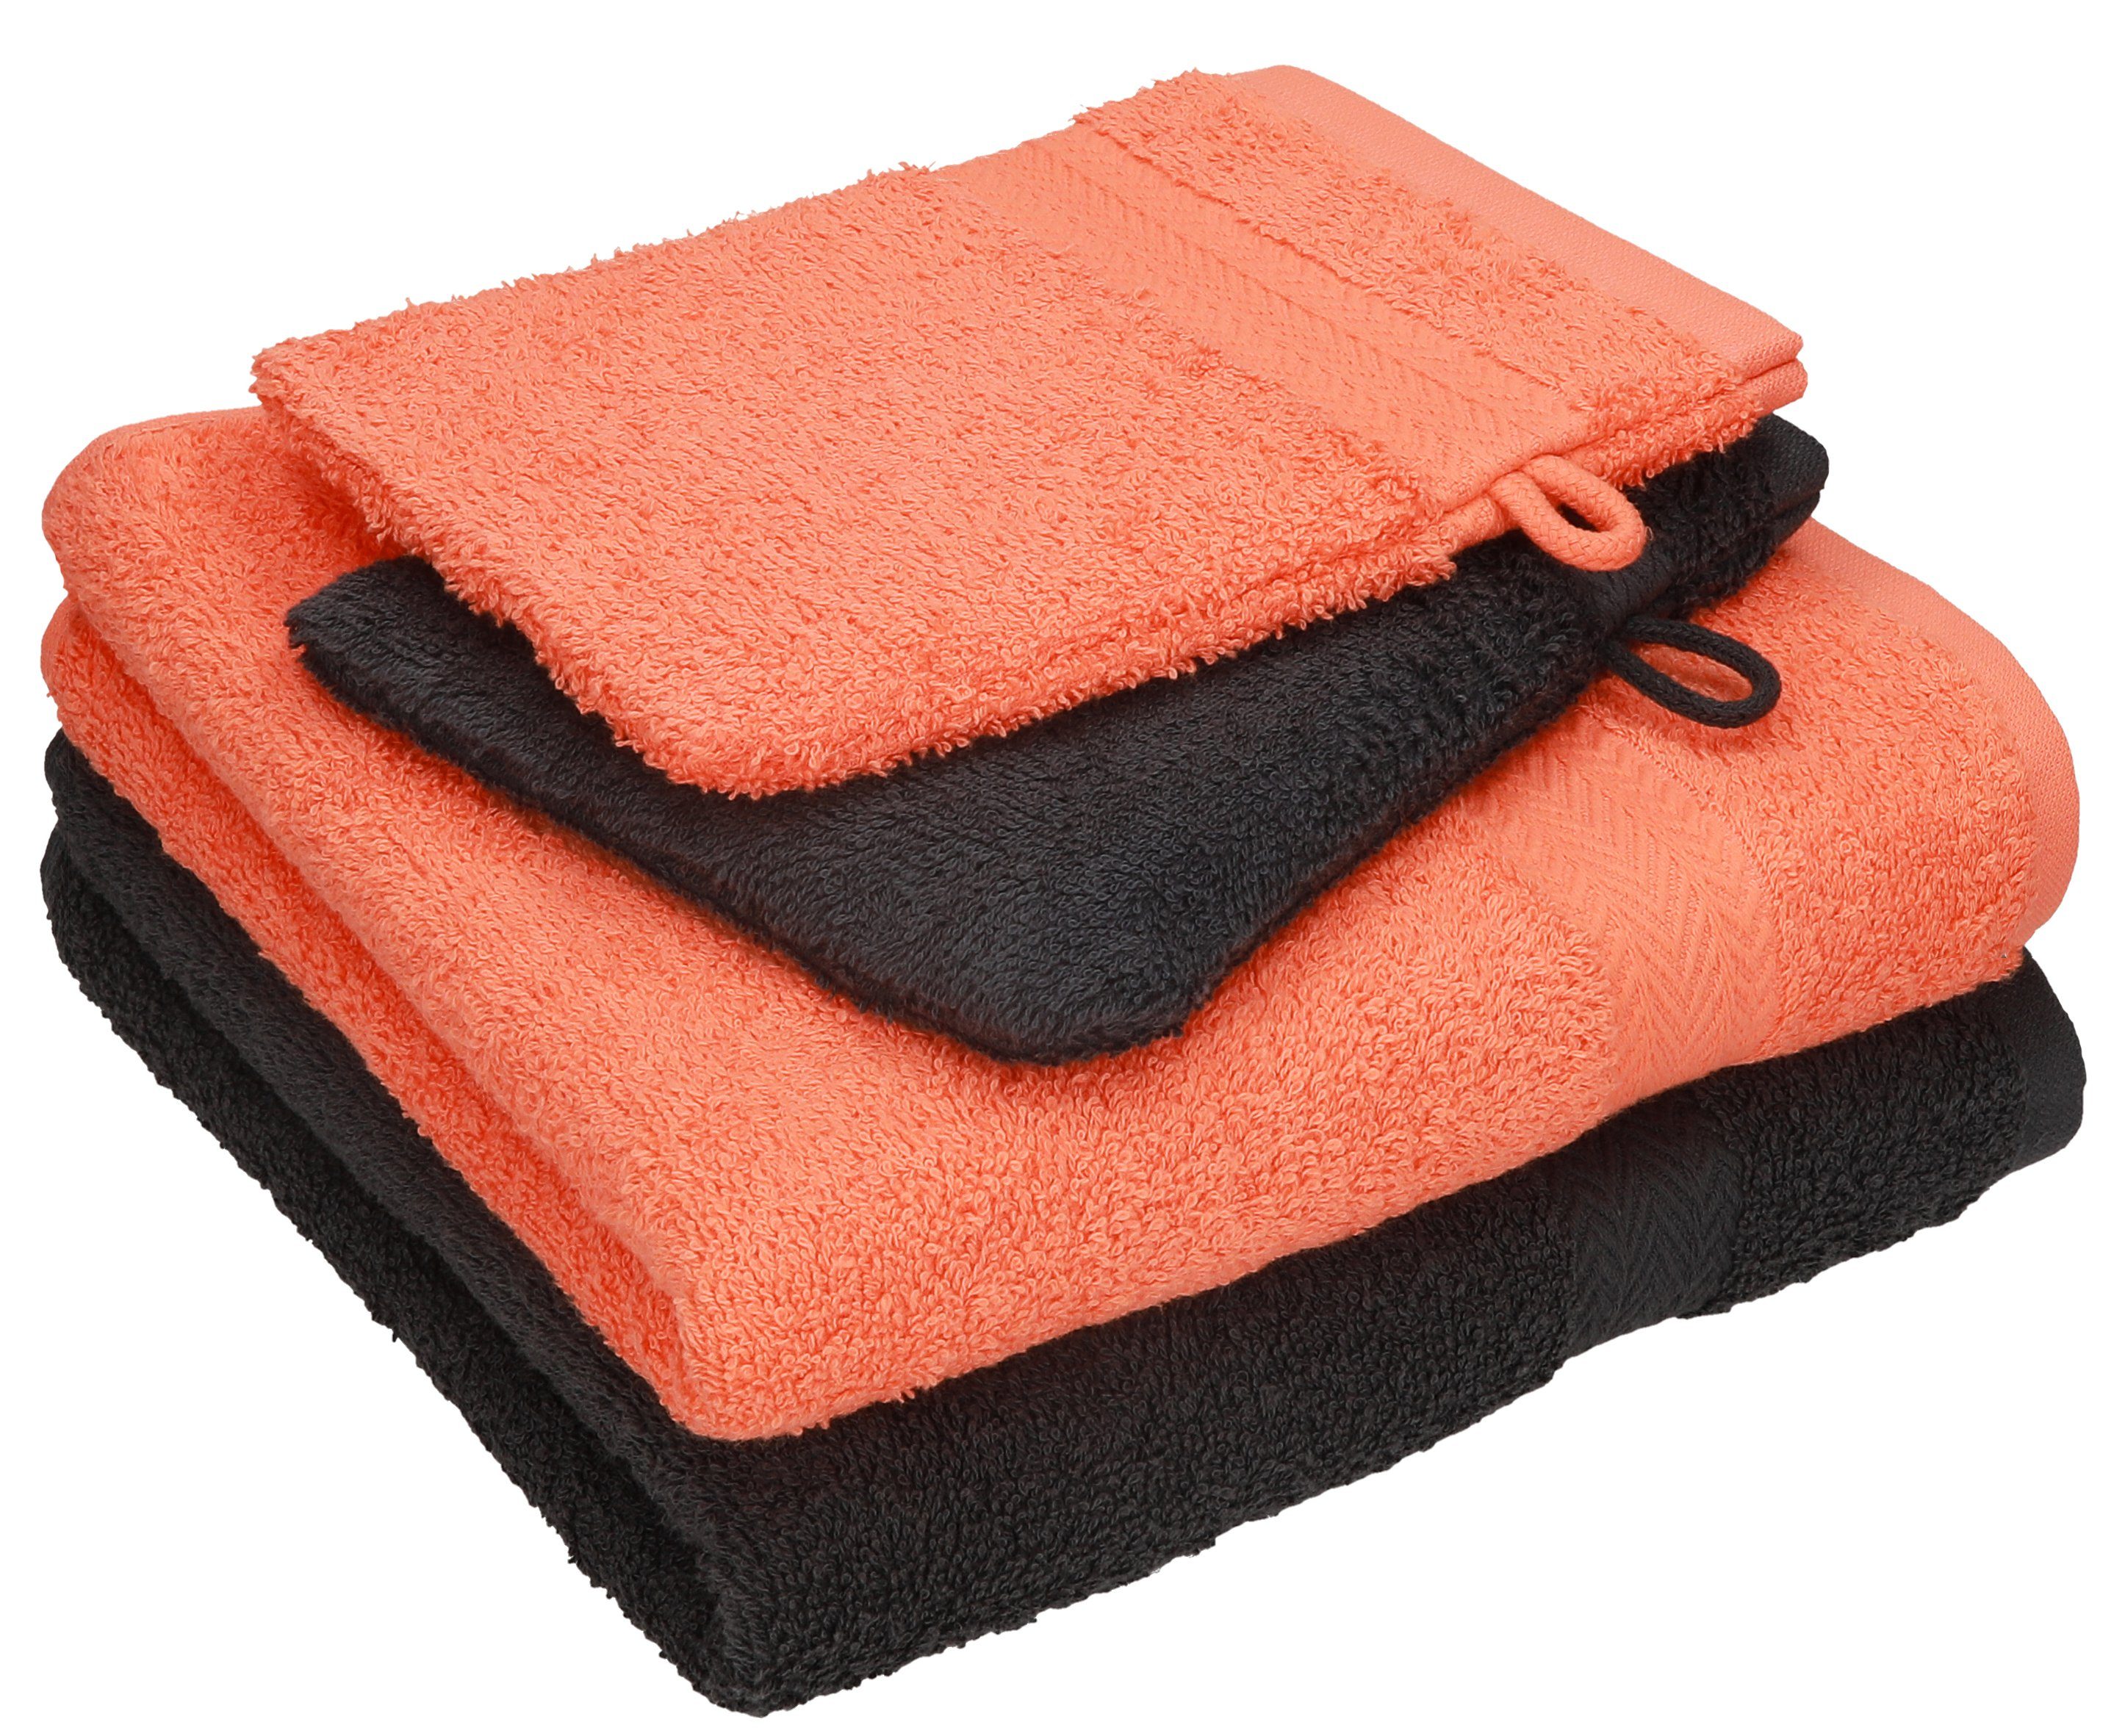 Betz Handtuch Set 4 tlg. Handtuch Set HAPPY Pack 100% Baumwolle 2 Handtücher 2 Waschhandschuhe, 100% Baumwolle graphit grau - blutorange